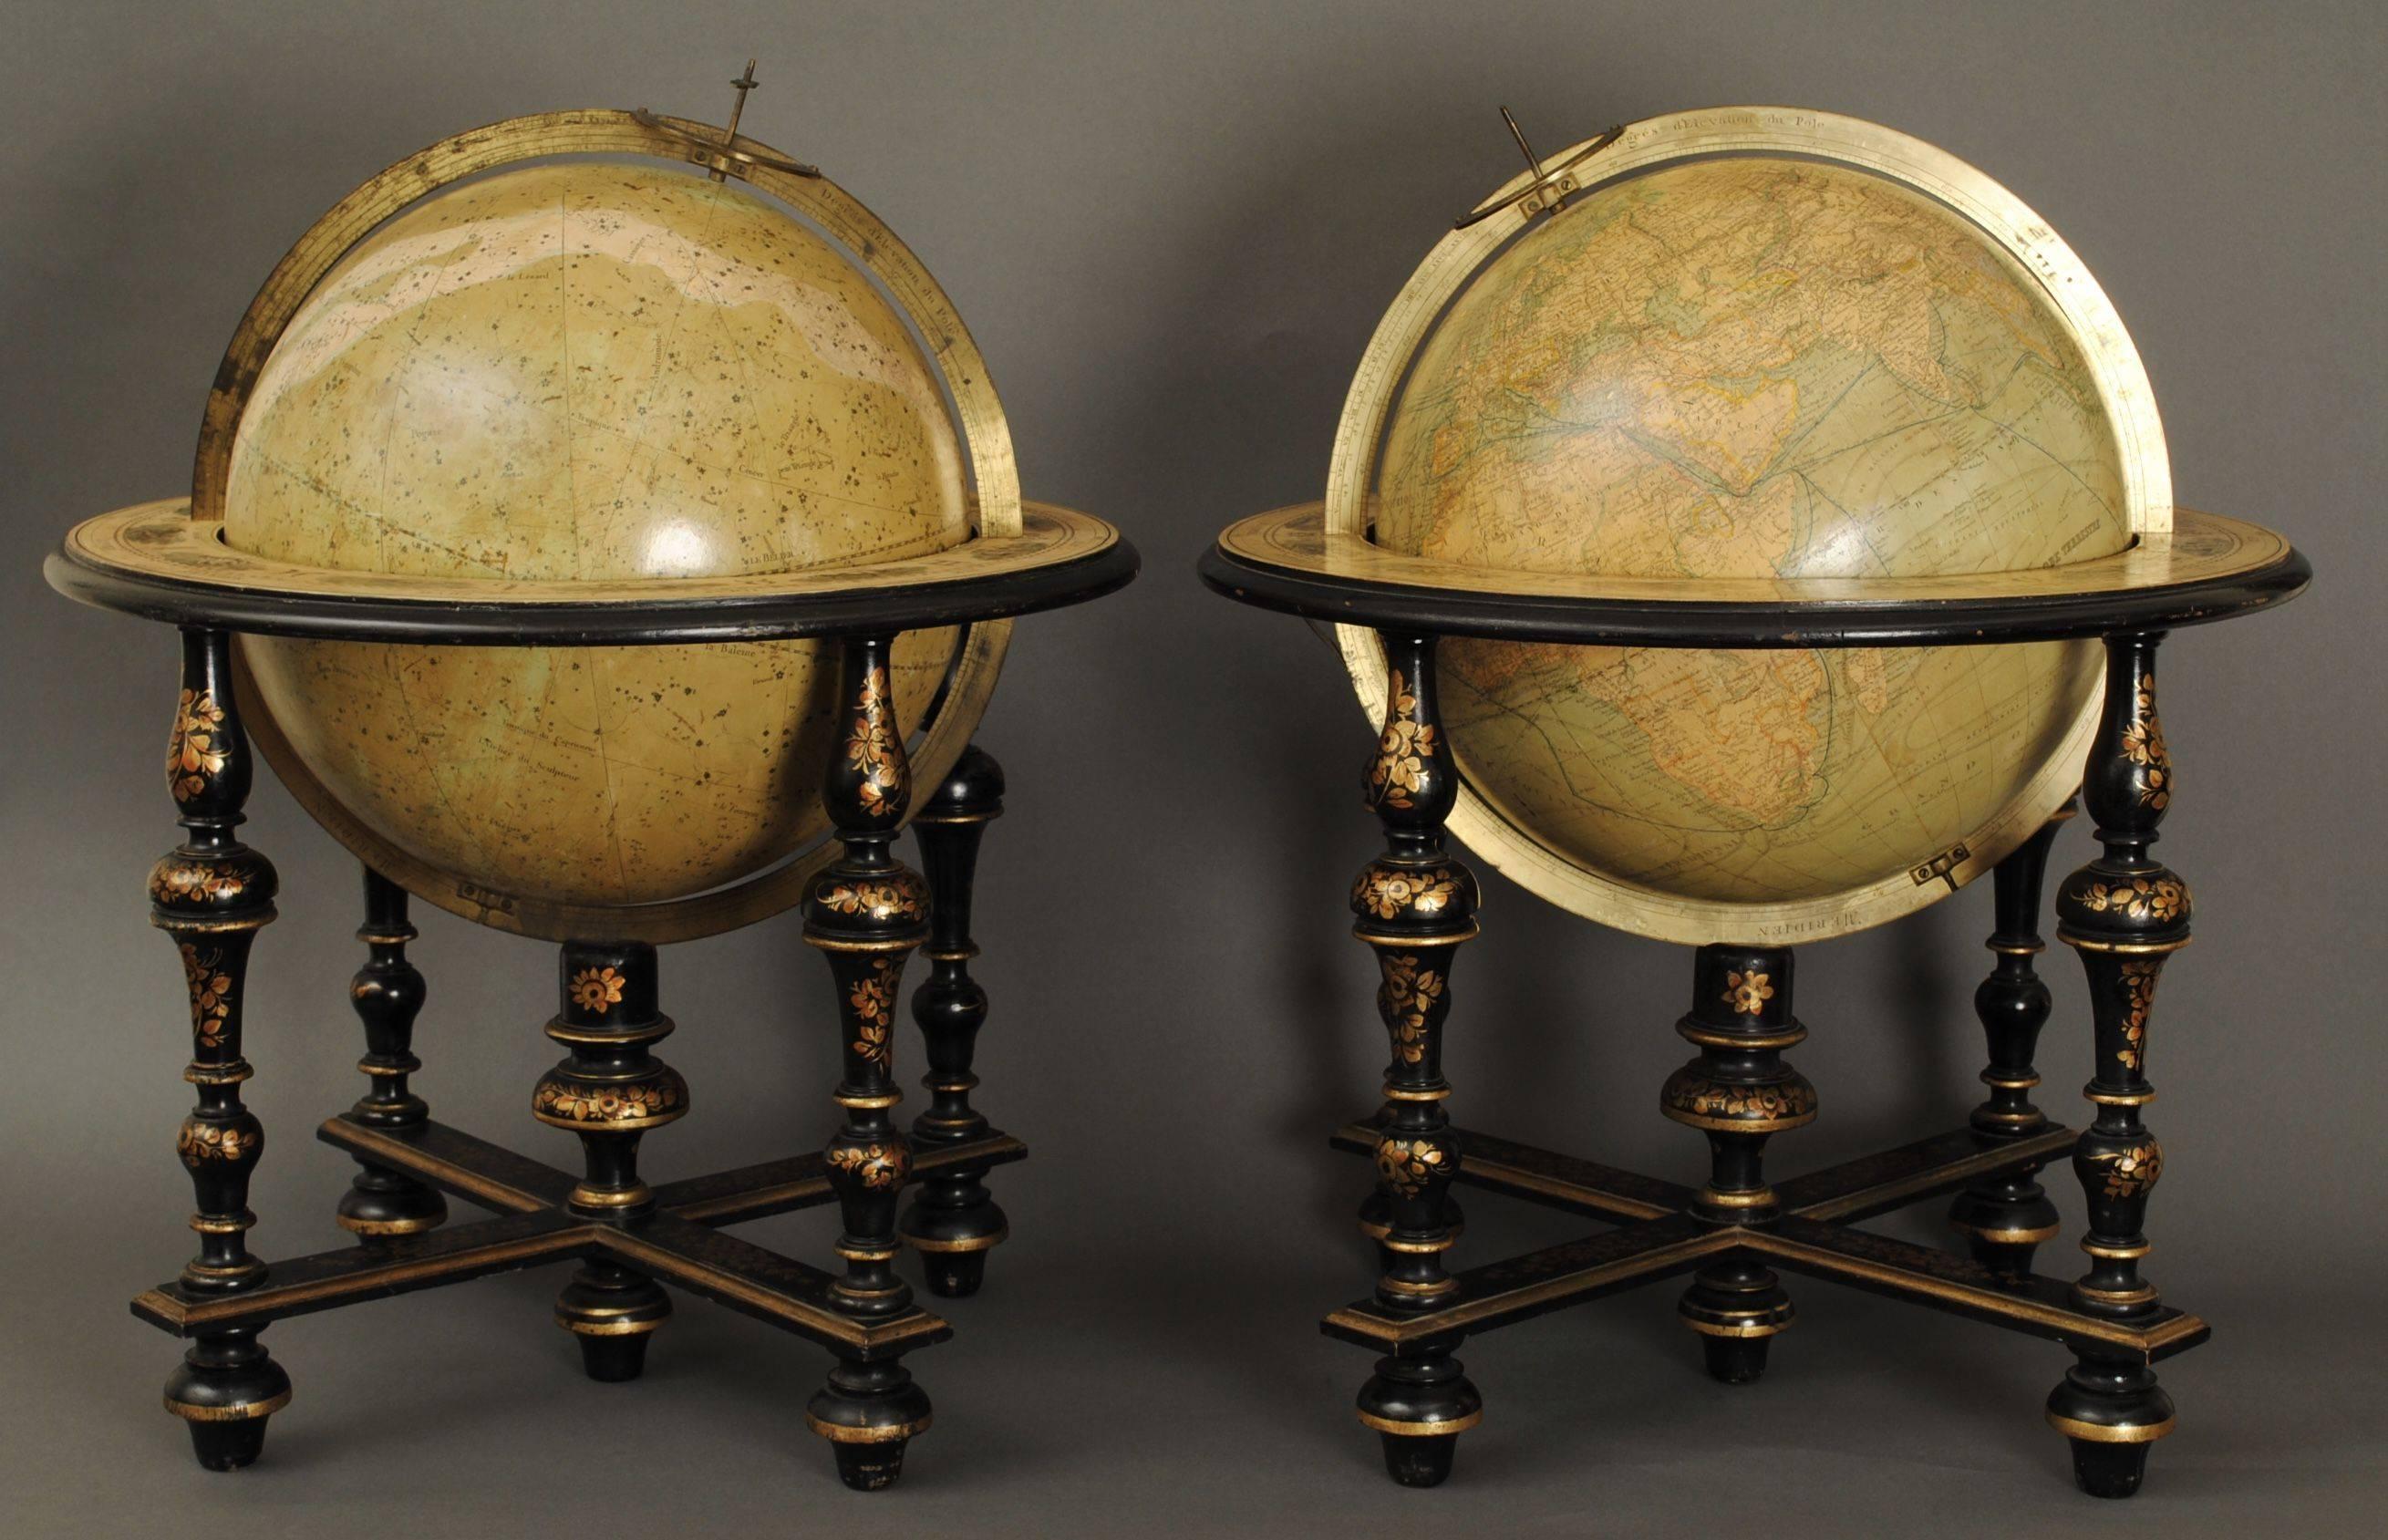 Une merveilleuse paire de globes de table du 19ème siècle par la Maison Delamarche Paris, en superbe état d'origine. Les globes de 12